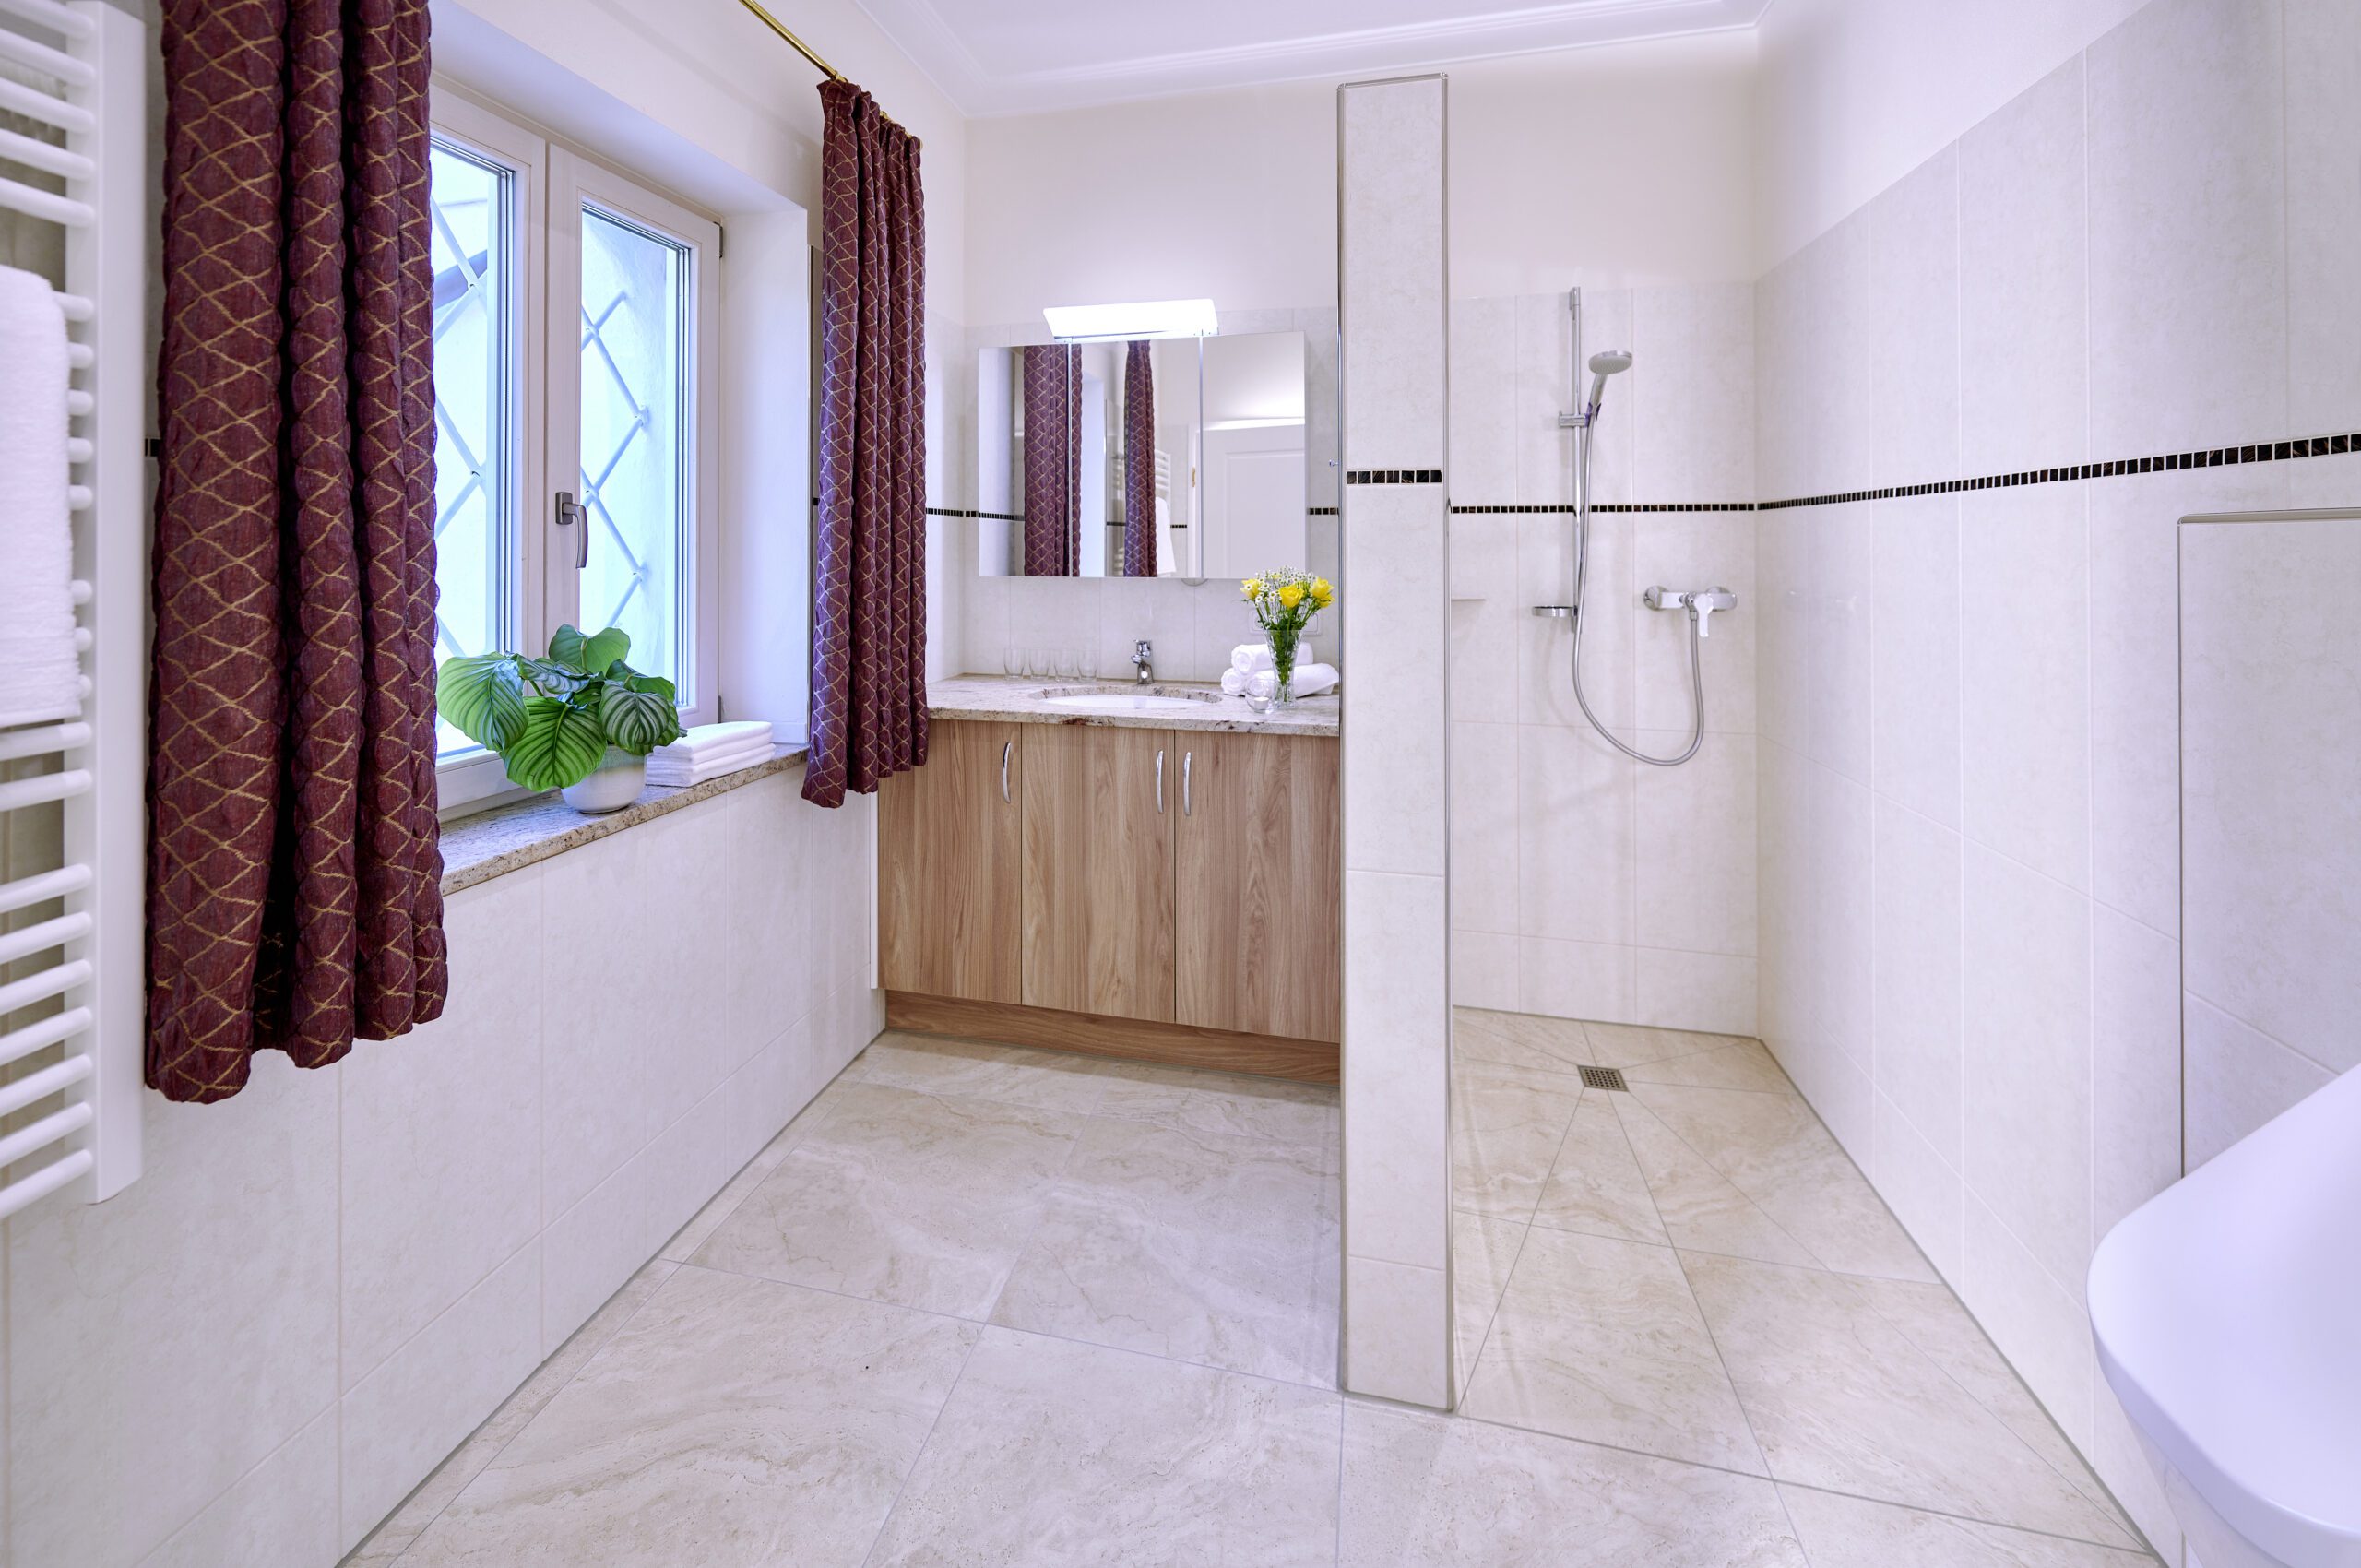 badezimmer mit begehbarer dusche auf der rechten seite, links daneben ist der waschtisch mit beige-melierten granit und hellbraunen unterbauschrank, am fenster sind rote vorhaeinge